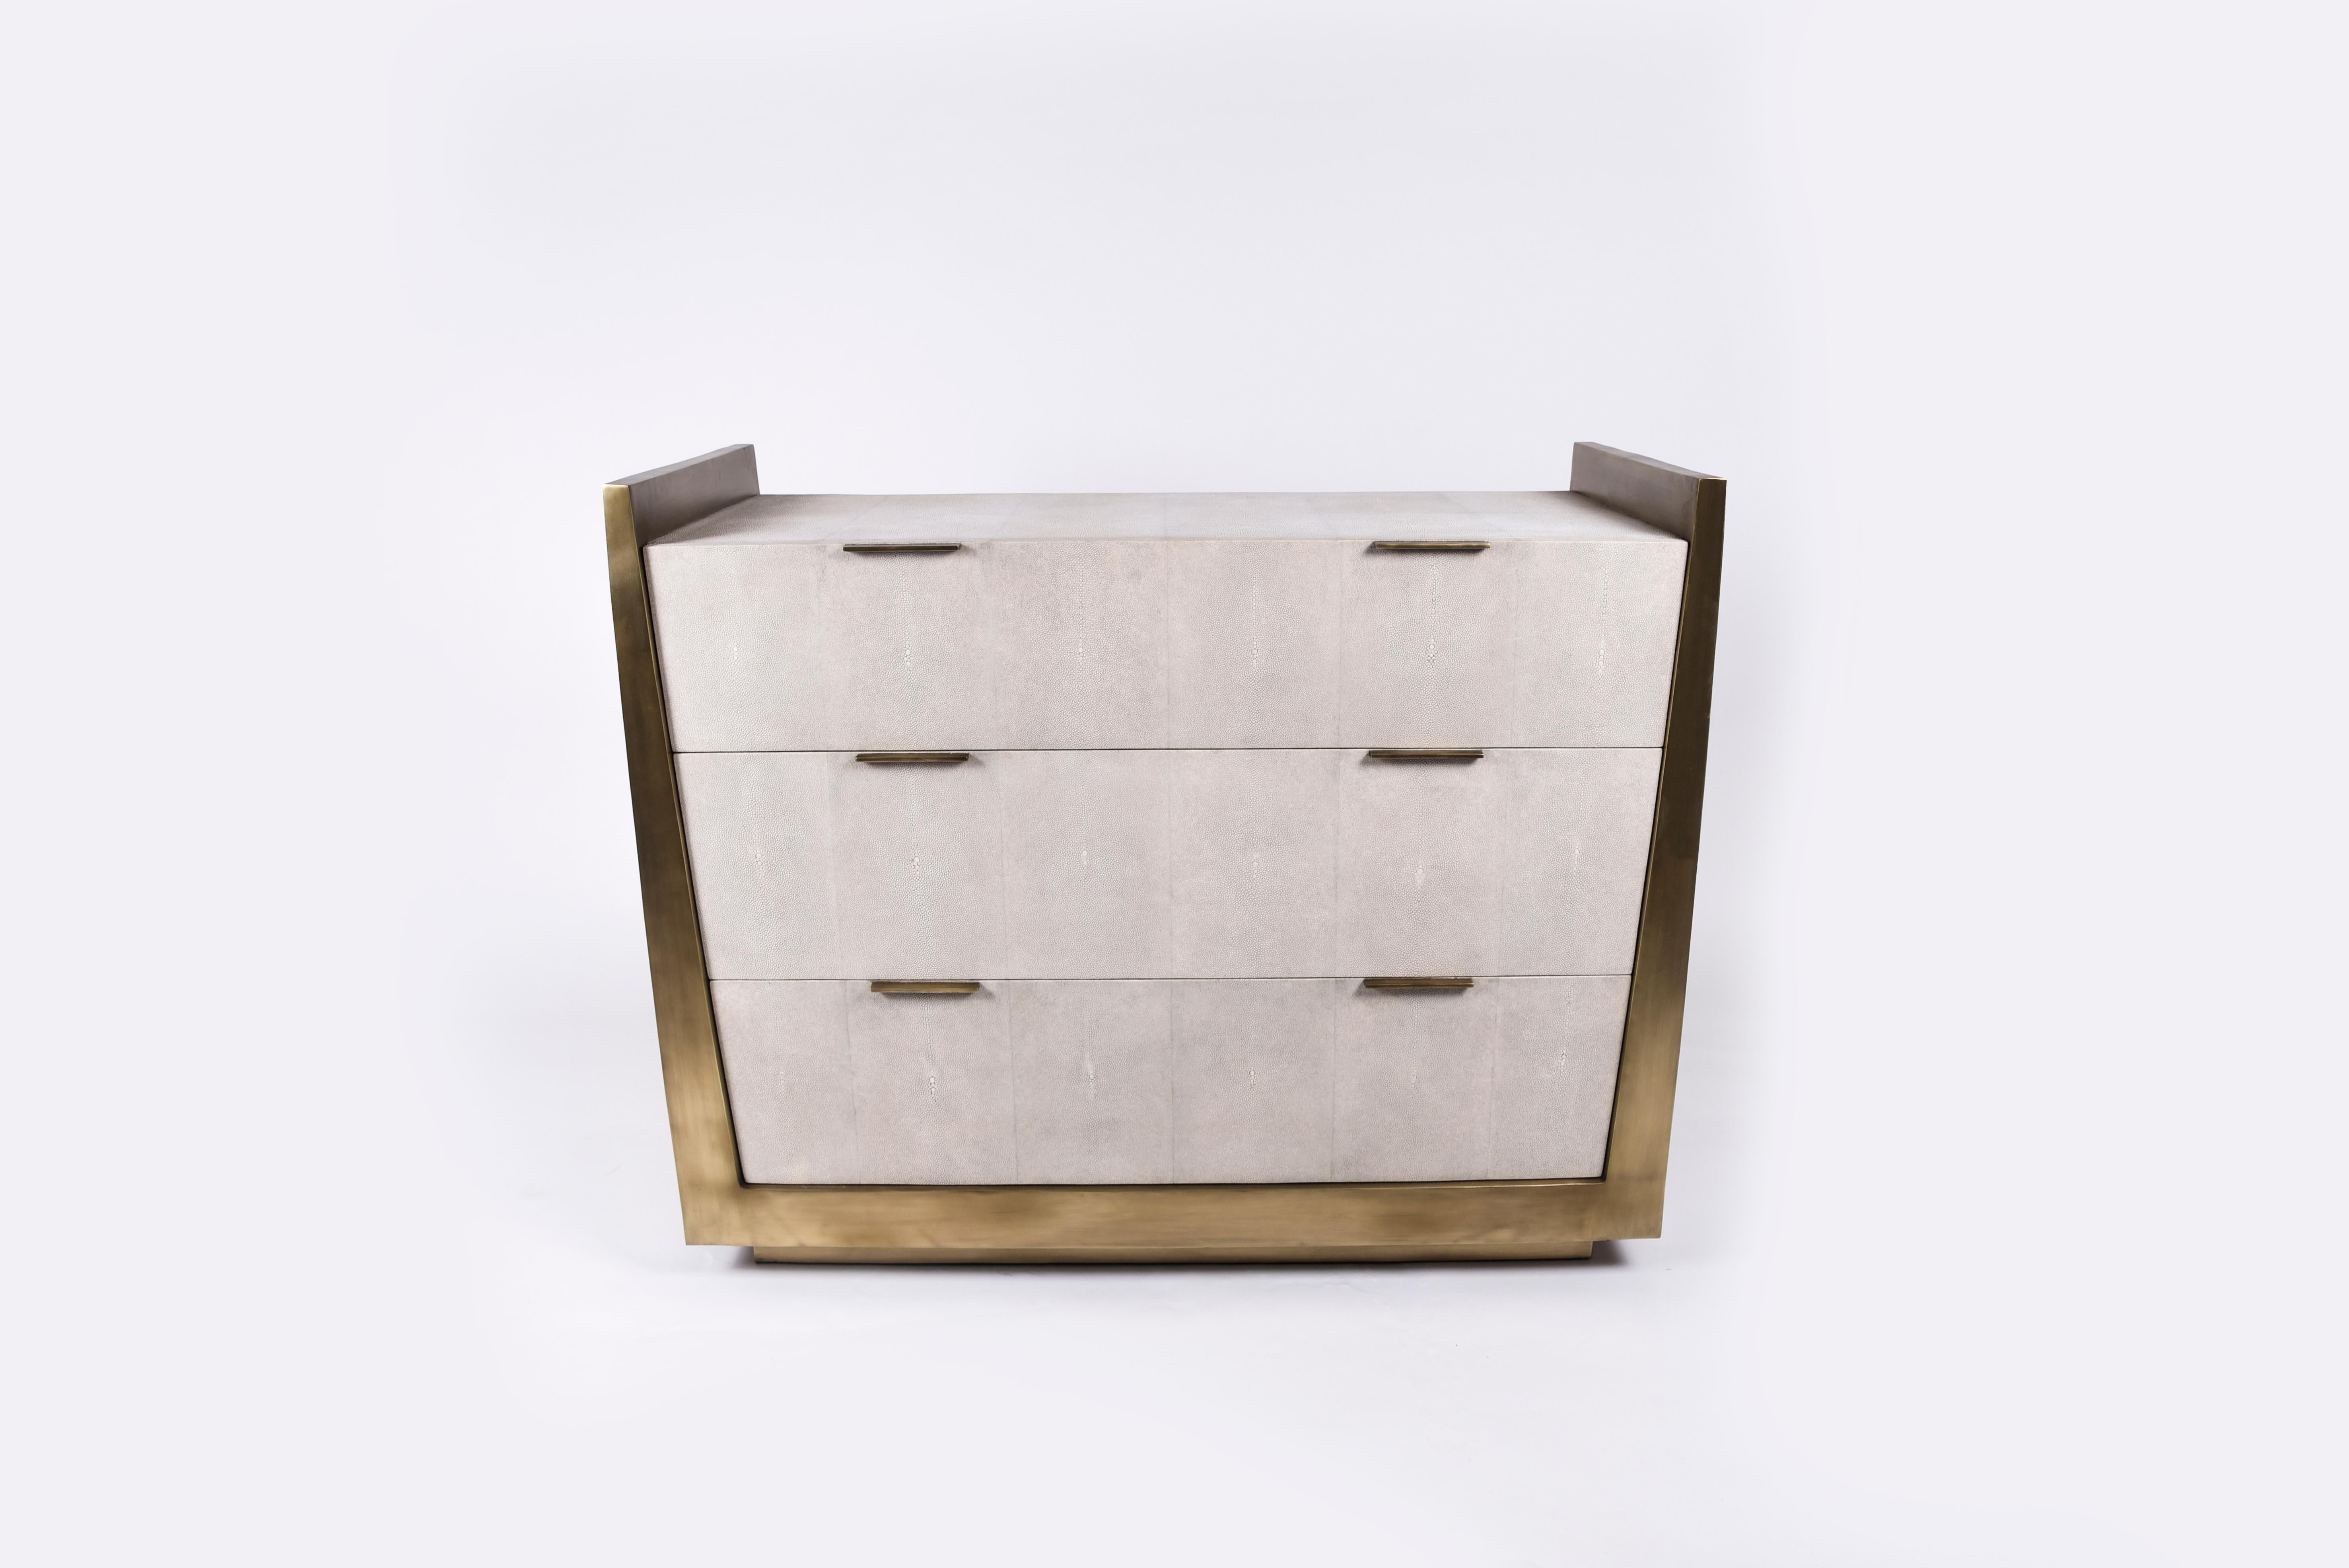 La commode Lola de R&Y Augousti est une pièce élégante avec sa géométrie subtile. Cette commode est entièrement incrustée de parchemin crème. La pièce est complétée par de discrètes poignées plates en laiton bronze-patiné pour les tiroirs. Les